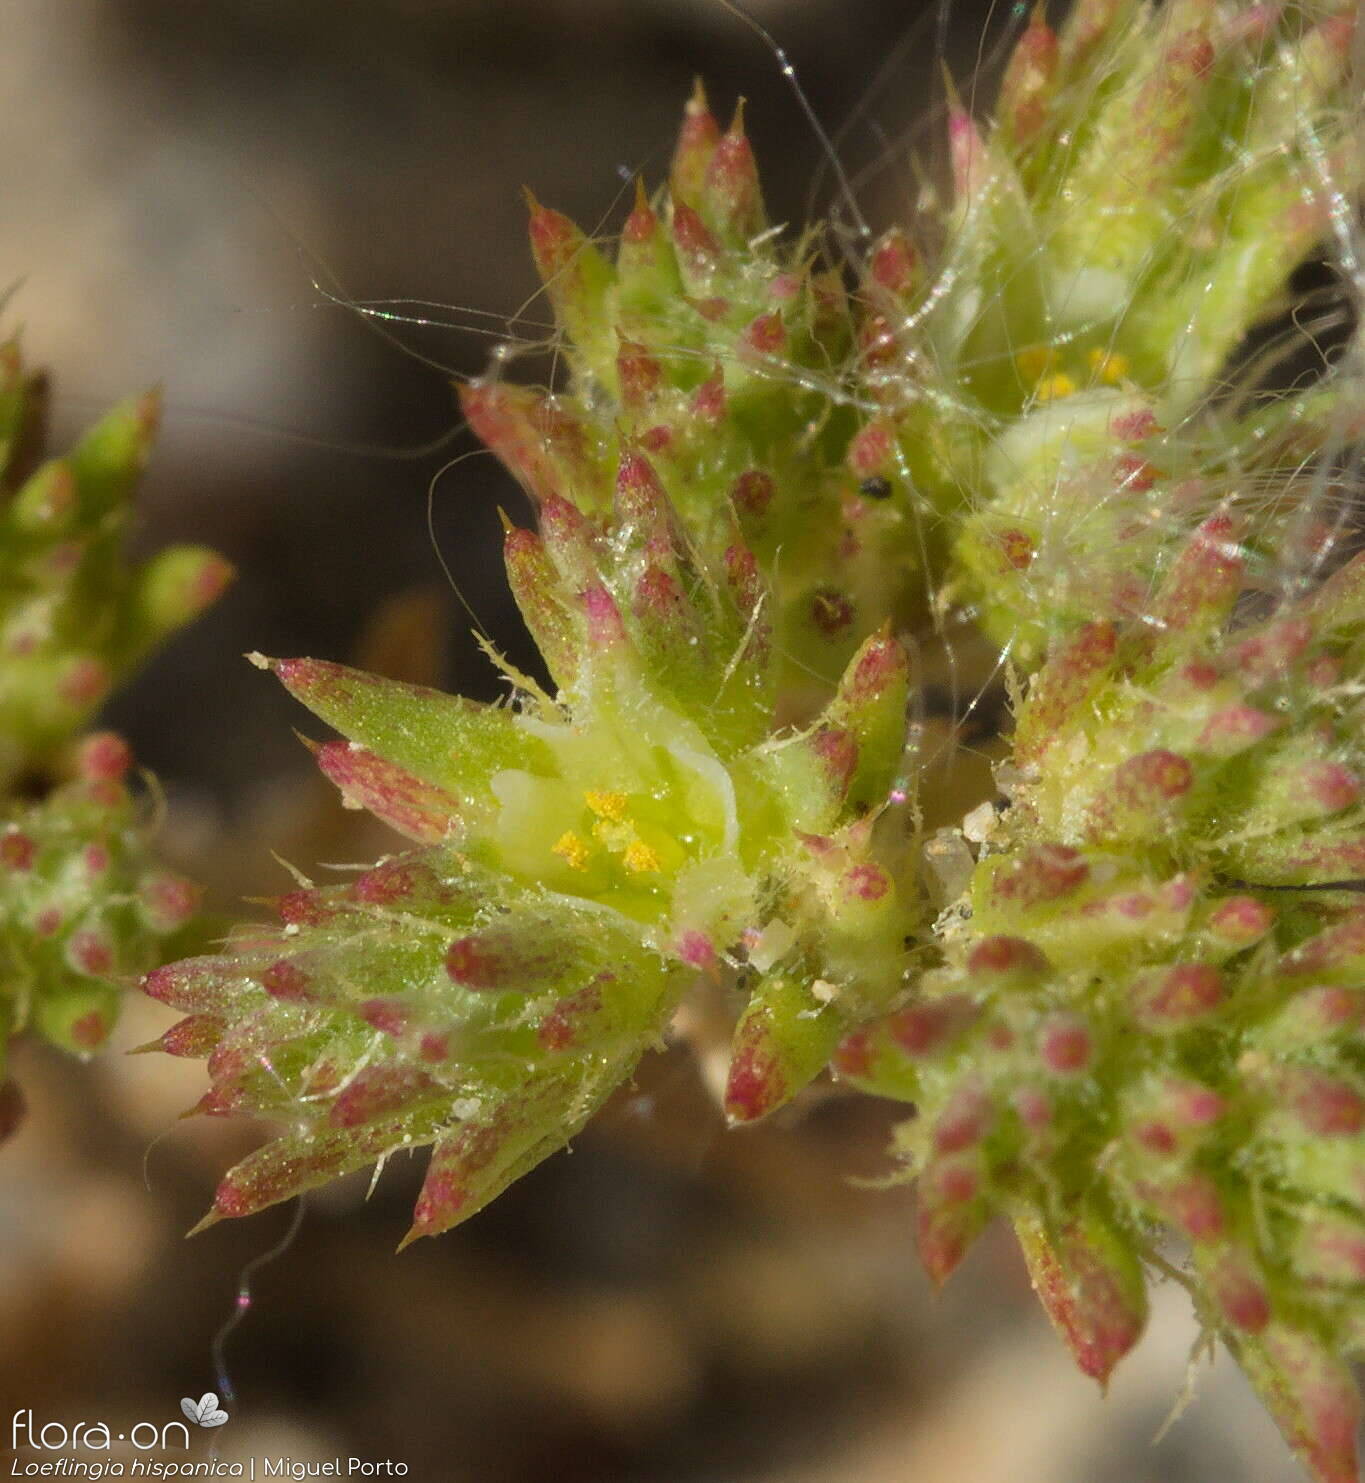 Loeflingia hispanica - Flor (close-up) | Miguel Porto; CC BY-NC 4.0